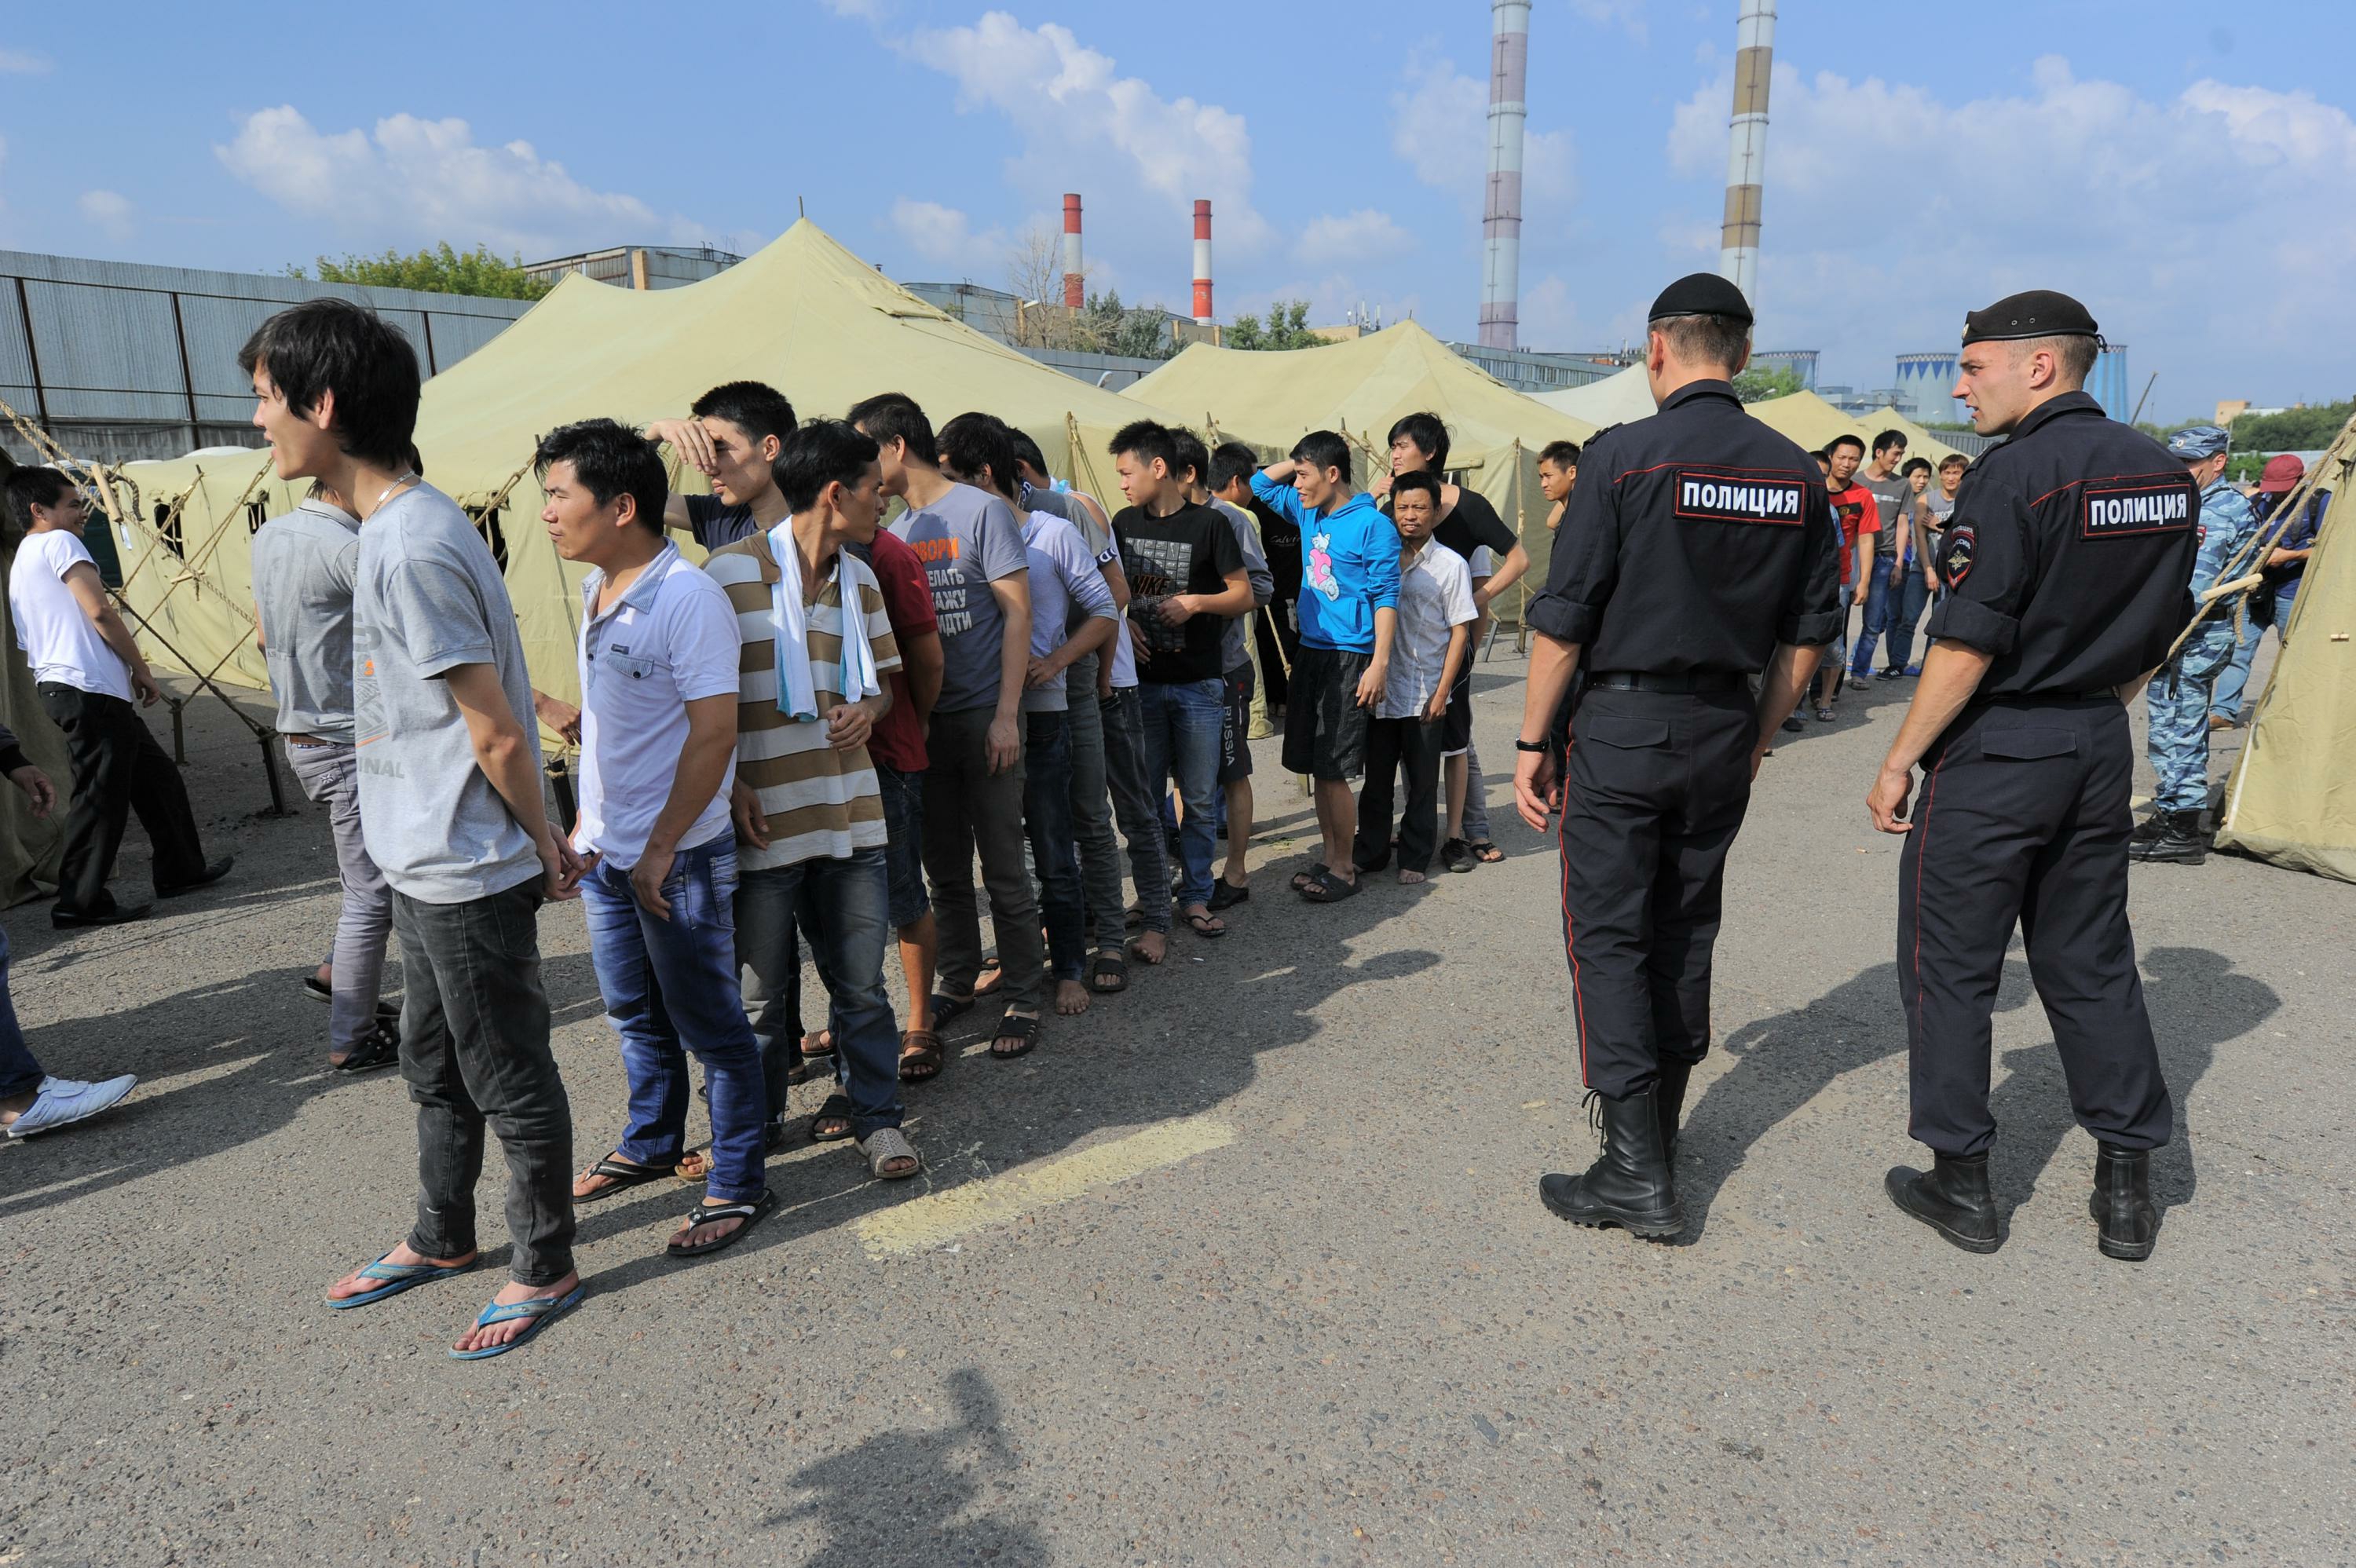 Таджиков ловят. Полиция задерживает мигрантов. Преступность мигрантов. Киргизы в России.